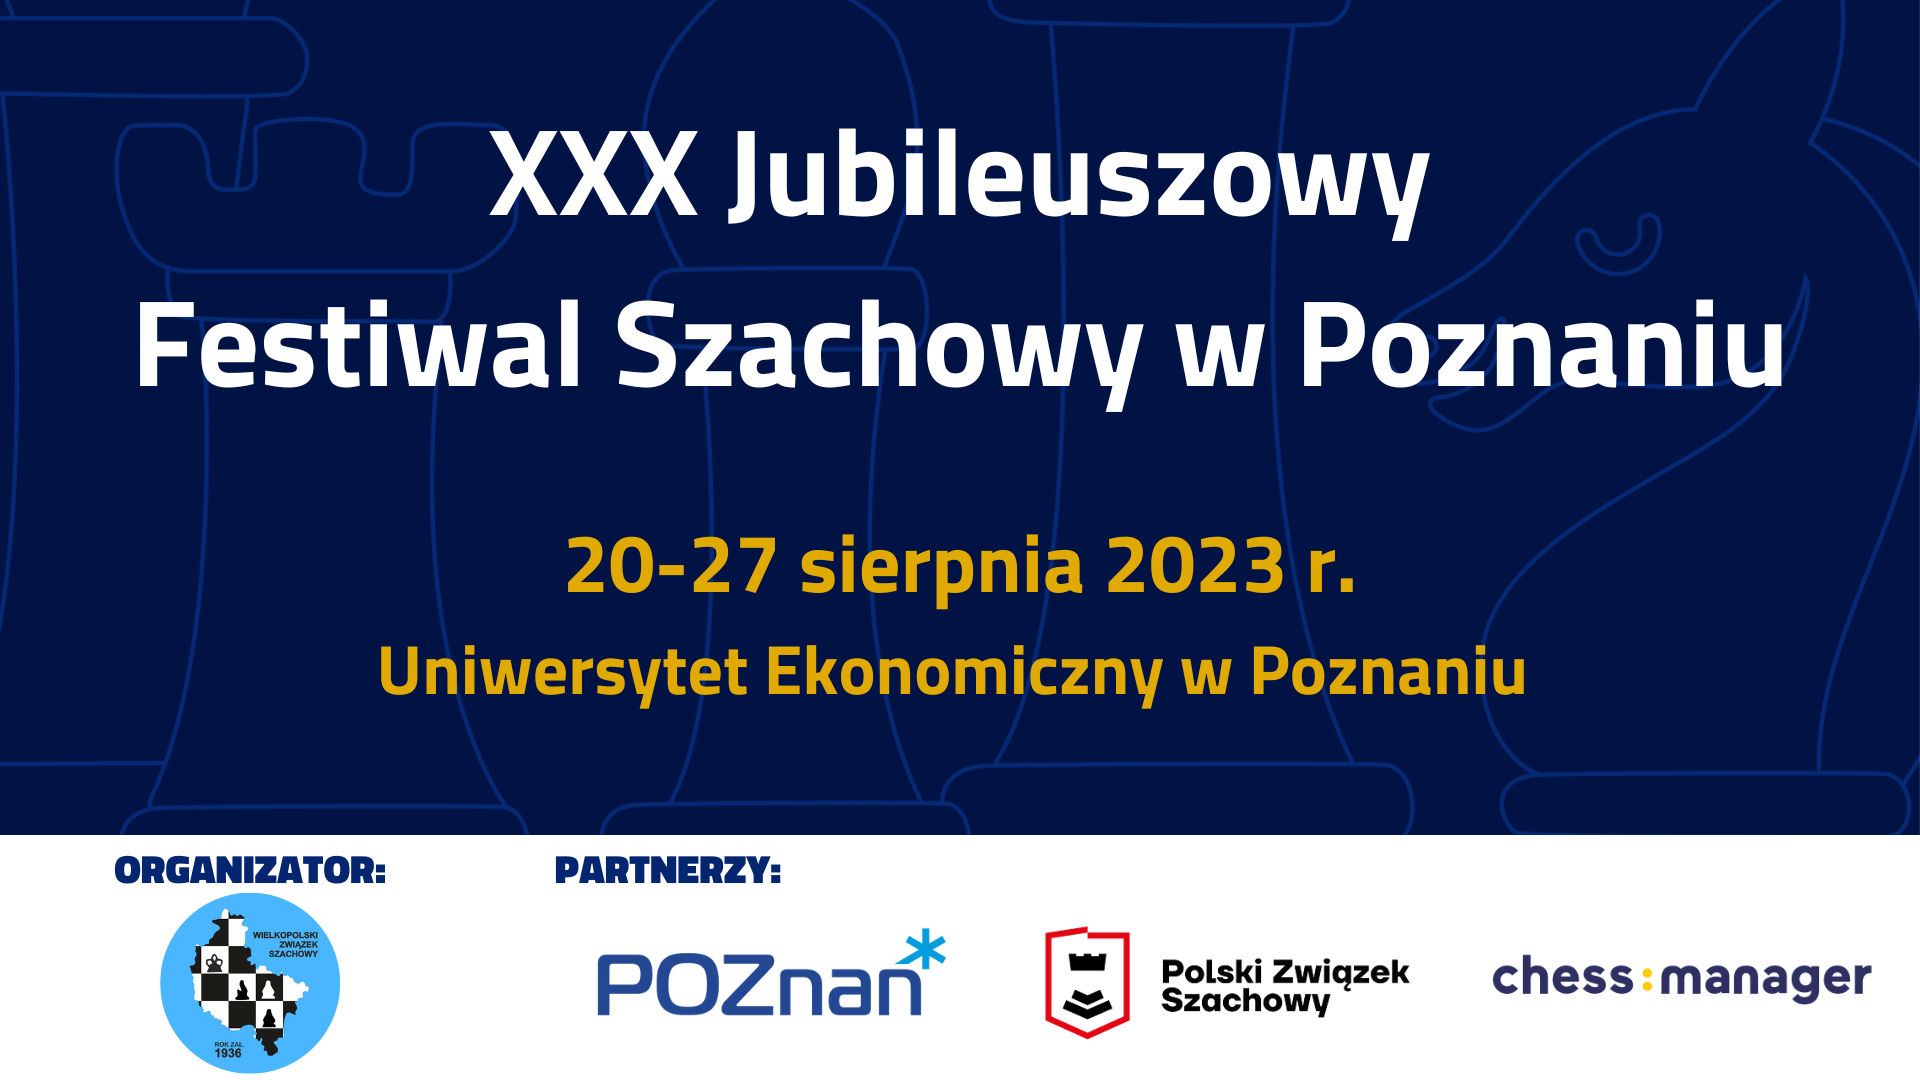 XXX Jubileuszowy Festiwal Szachowy w Poznaniu